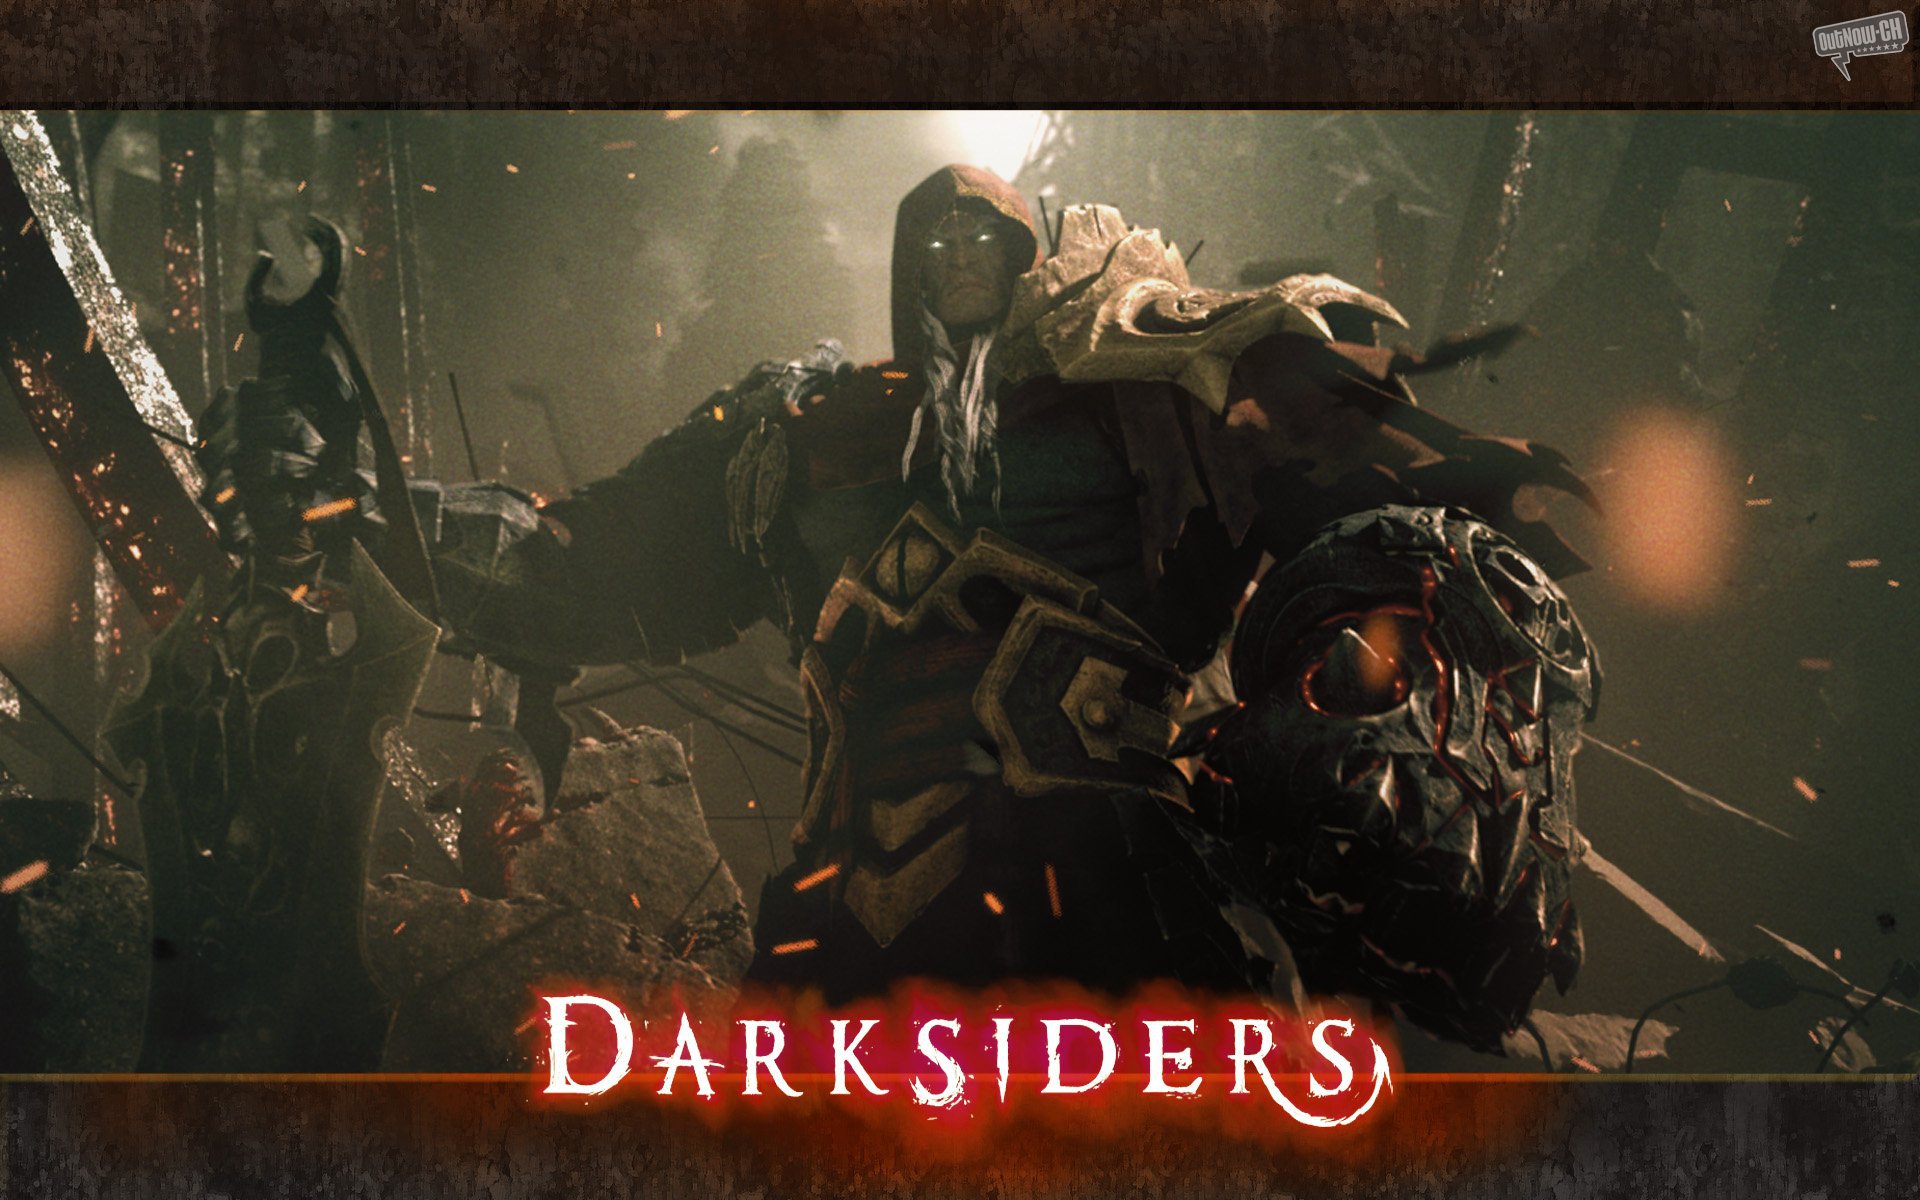 Darksiders wallpapers | Darksiders stock photos